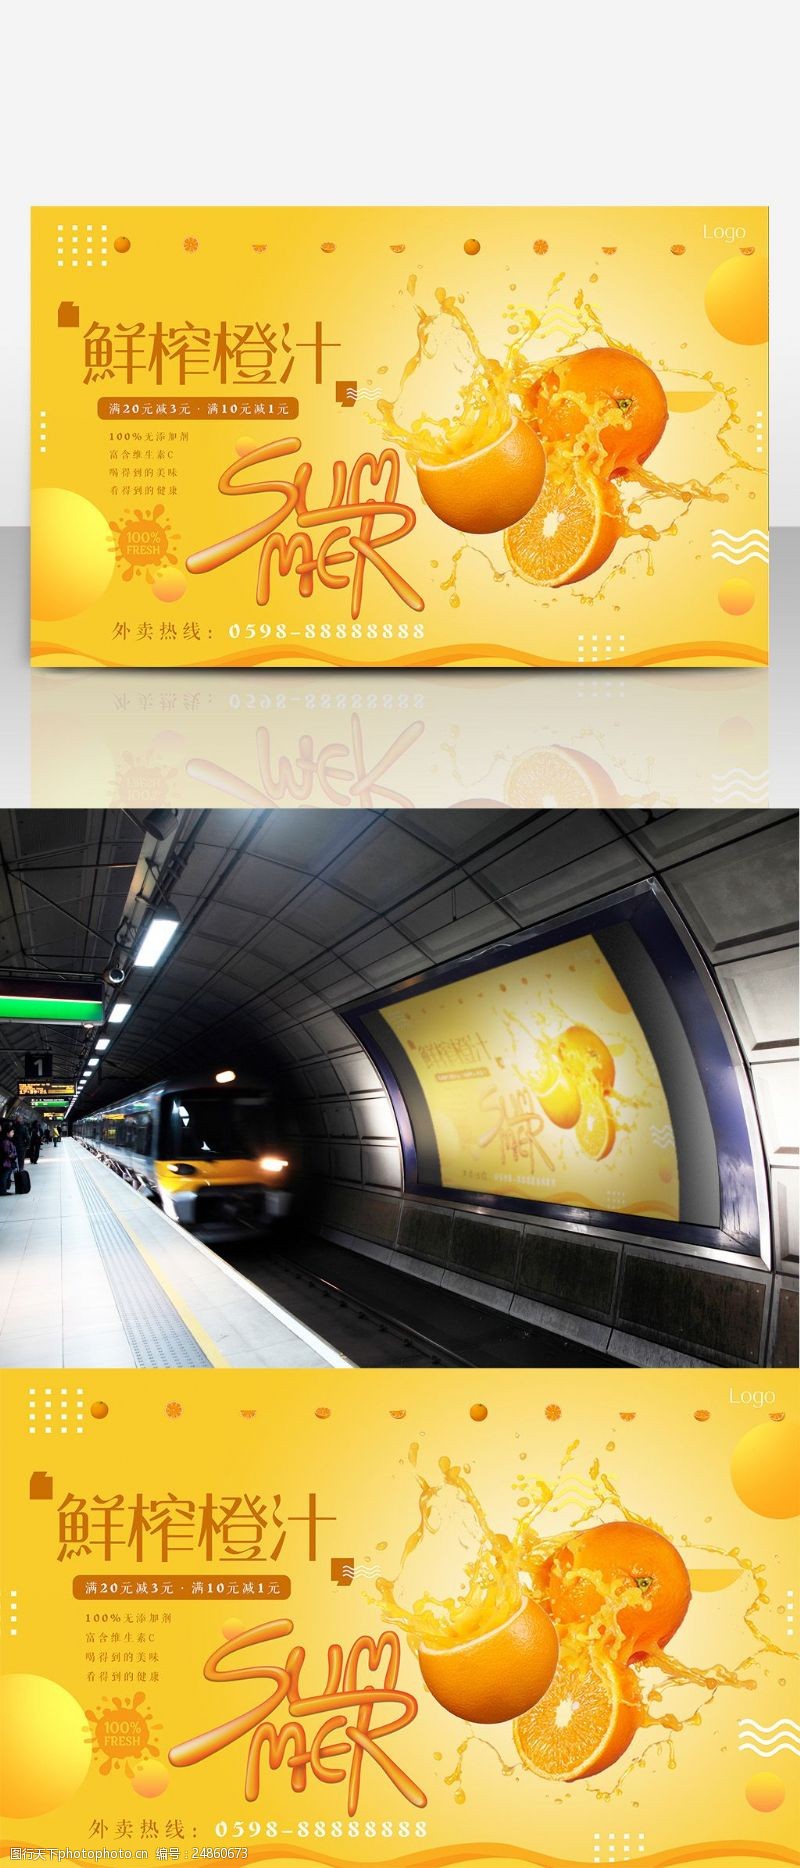 夏季橙汁饮料促销宣传海报